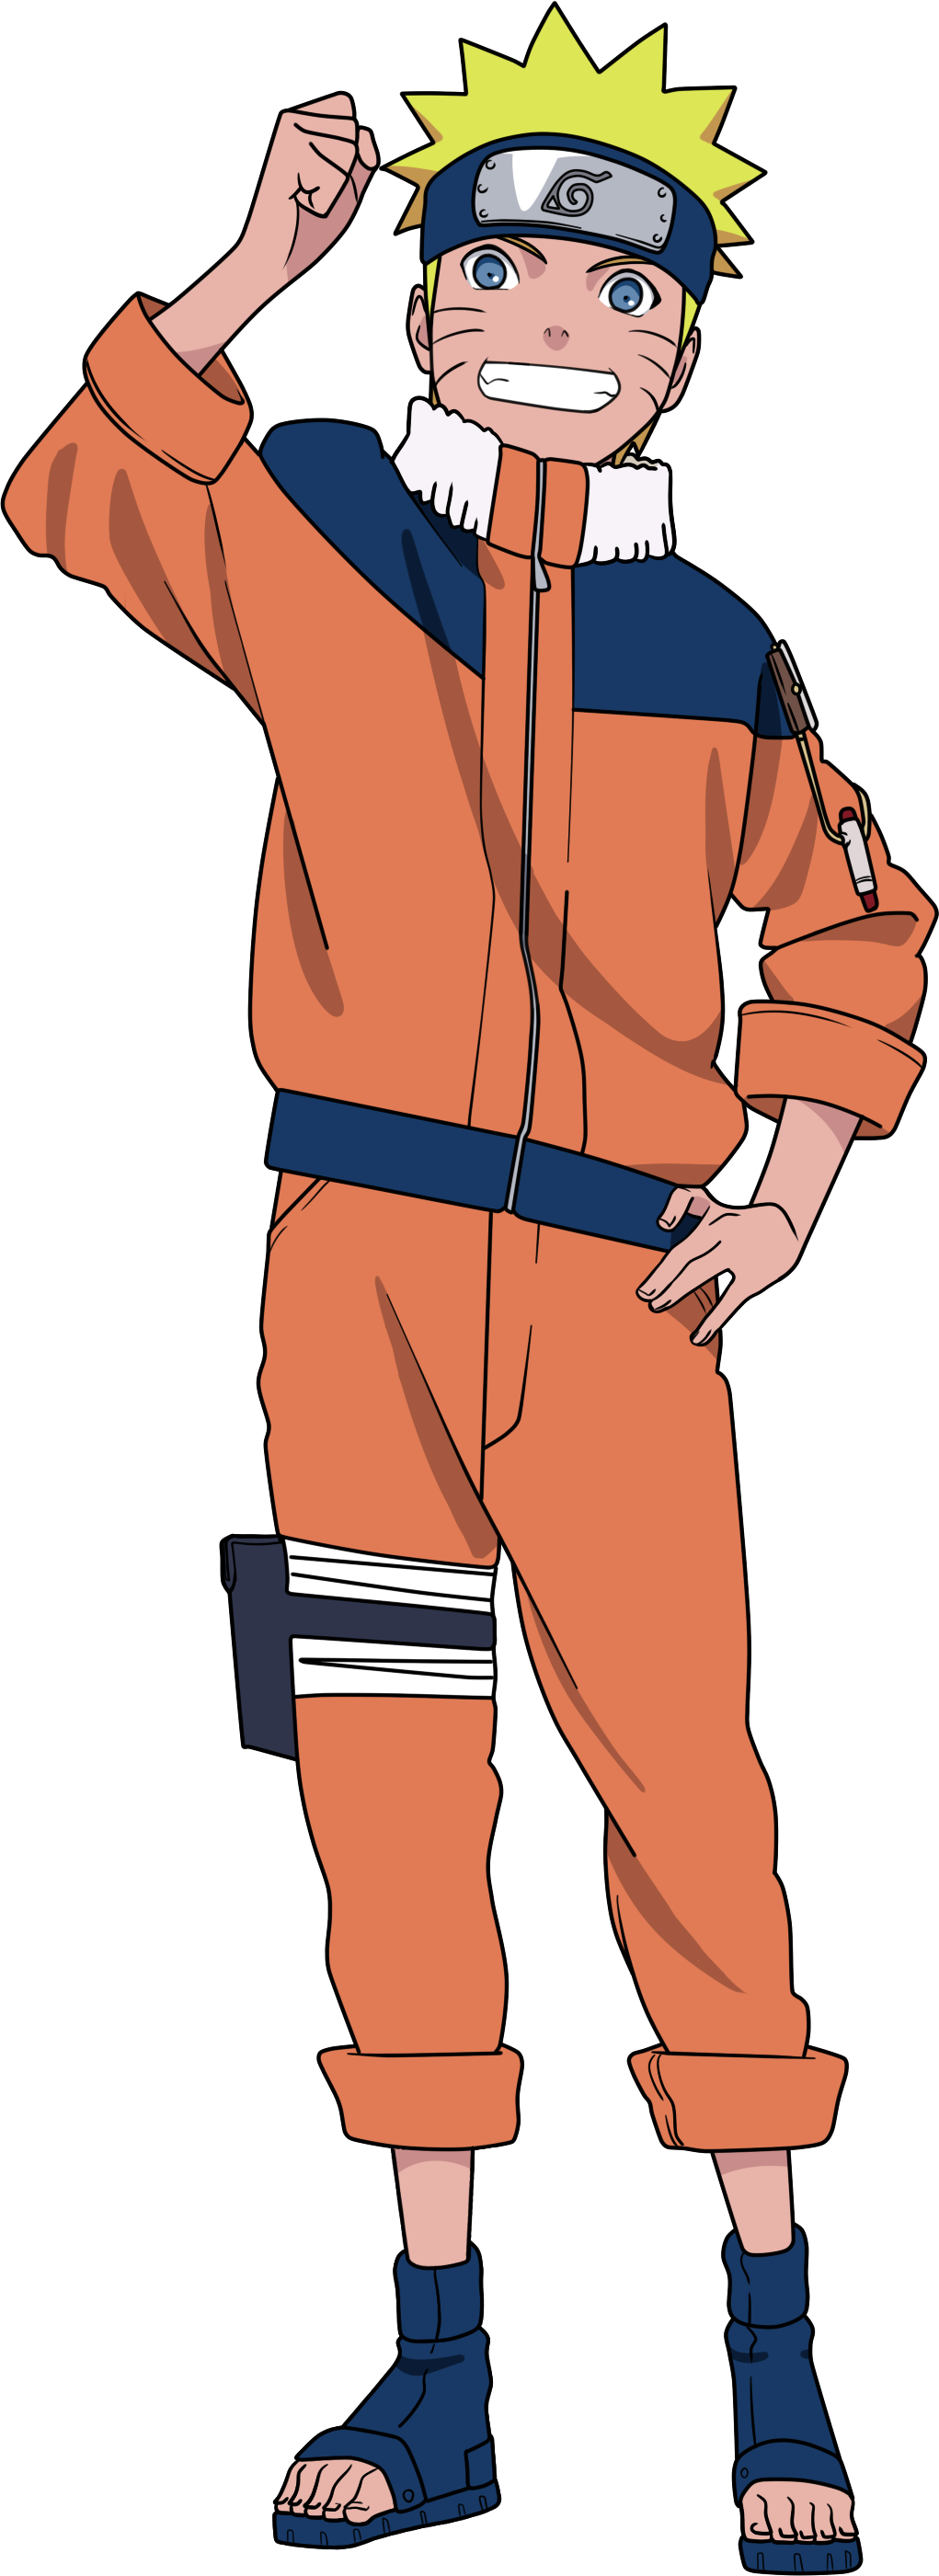 Naruto (season 1) - Wikipedia